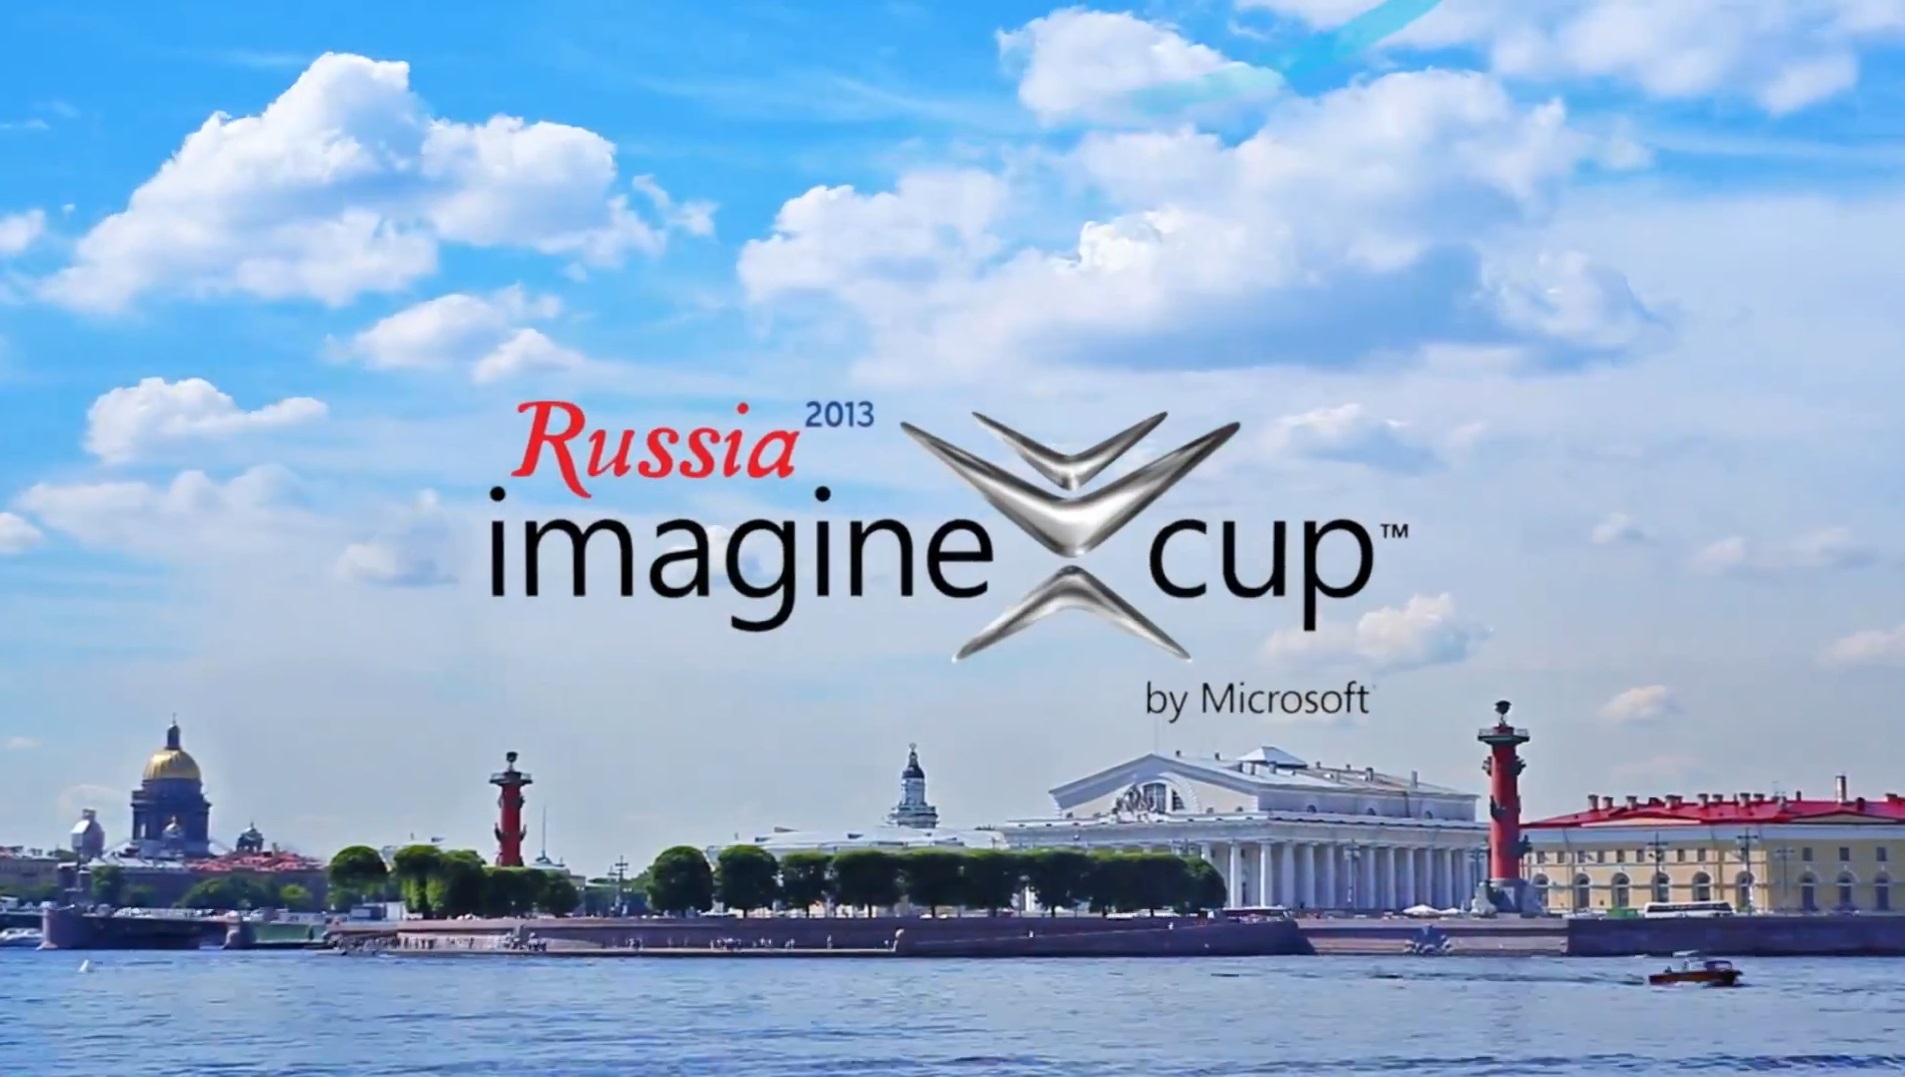 Imagine russia. Petersburg Cup 2013. Imagine Russia красота. Your Russia. Красота Imaginary Russia.